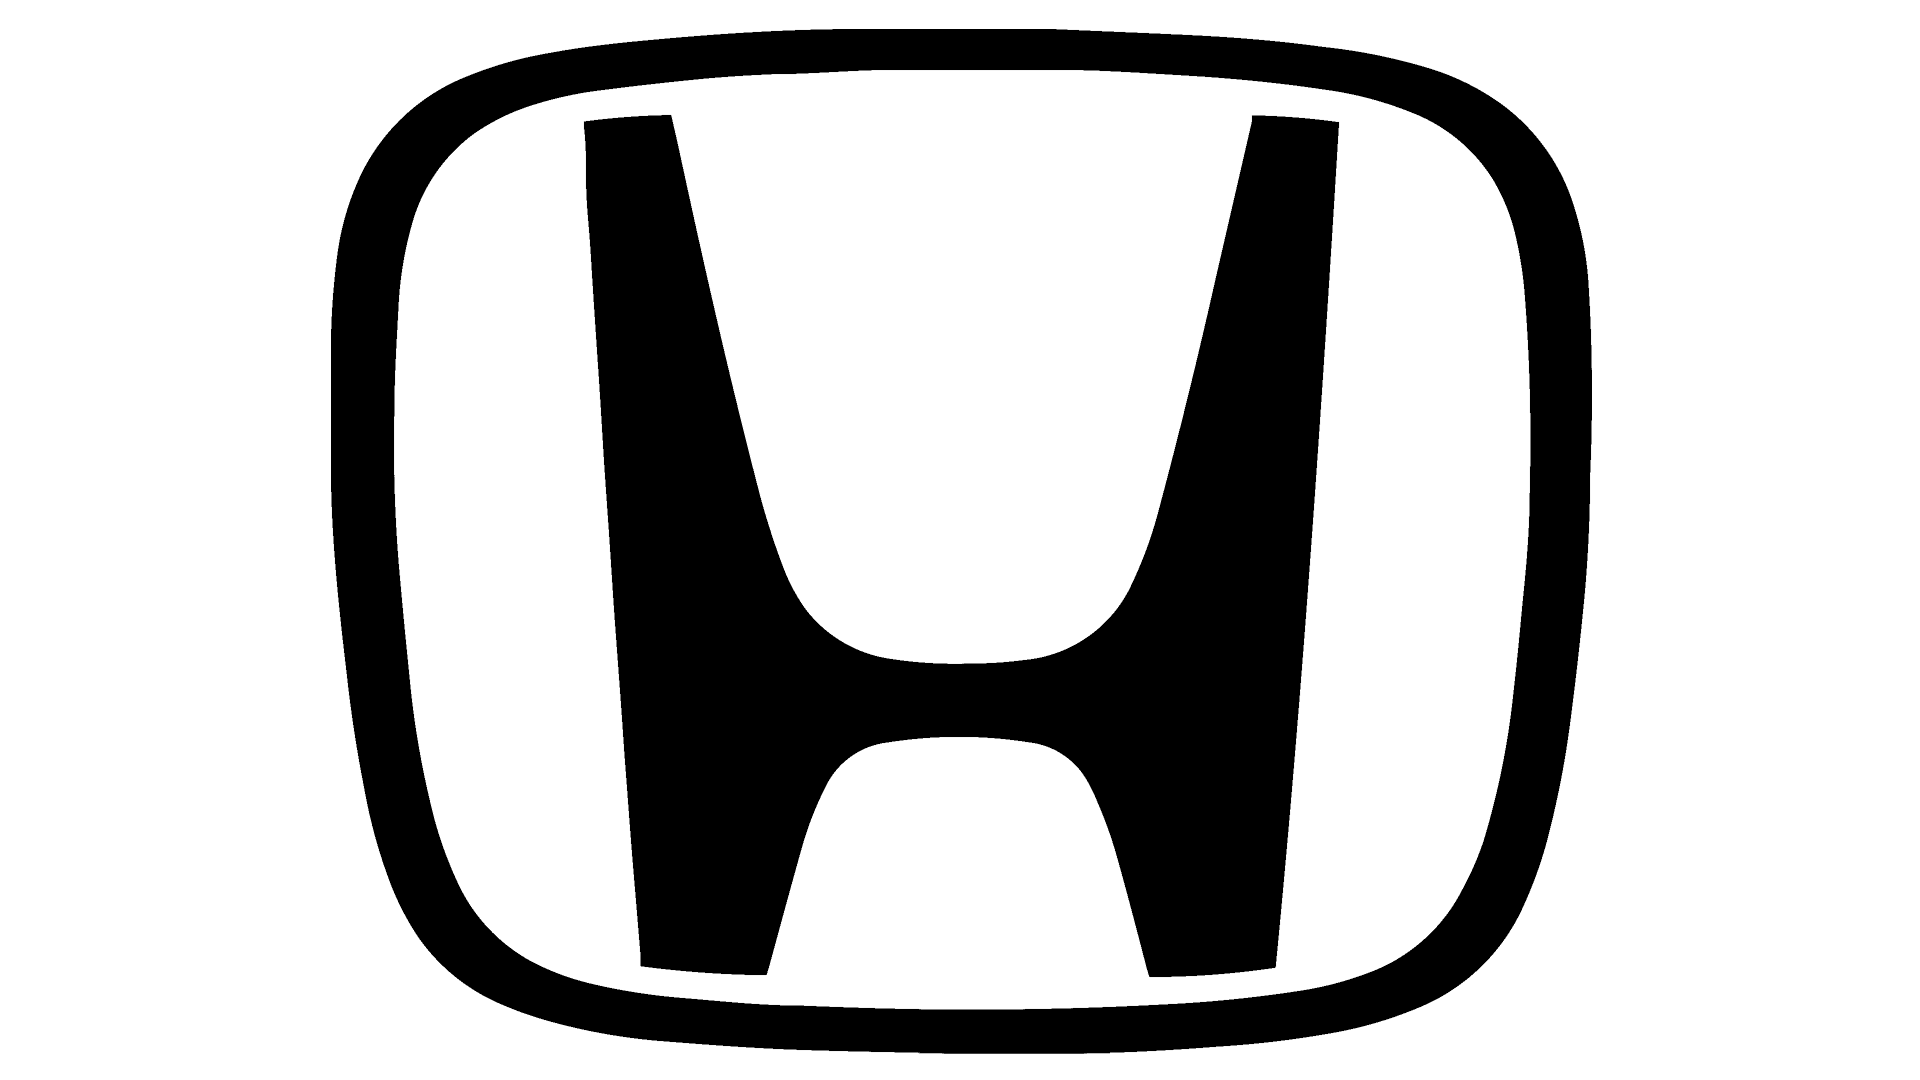 Automarken mit H - Logo, zeichen, emblem, symbol. Geschichte und Bedeutung